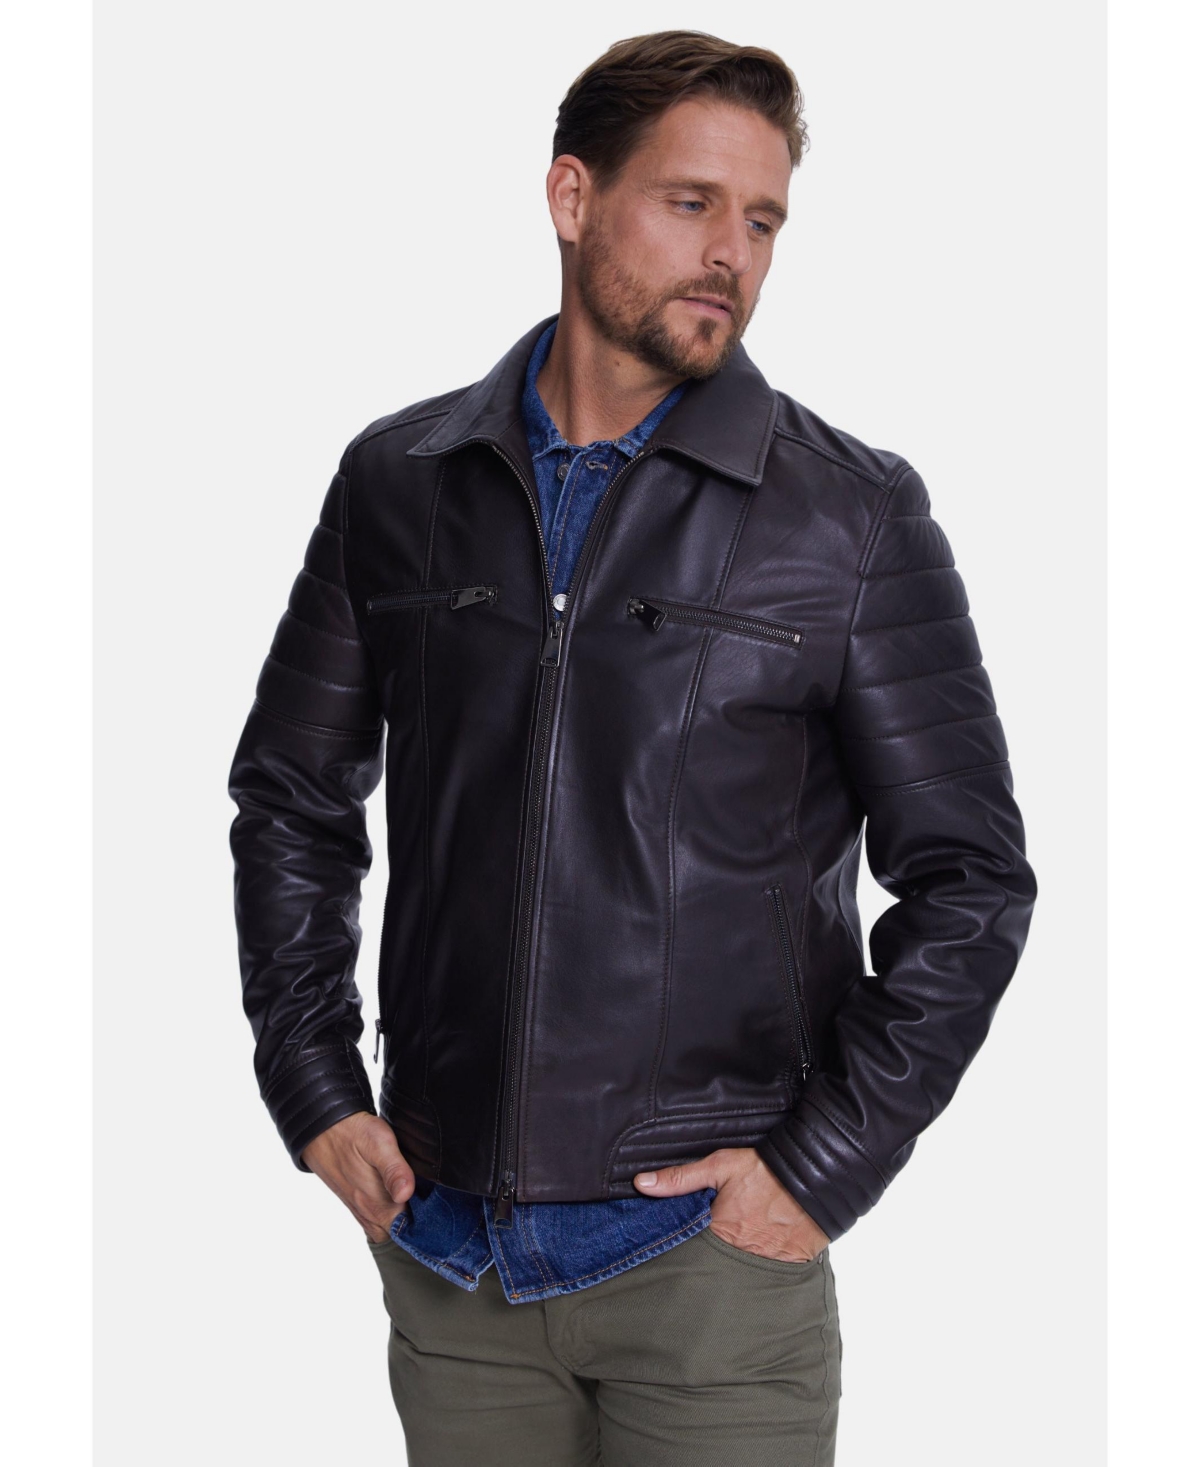 Men's Leather Jacket, Dark Brown - Dark brown